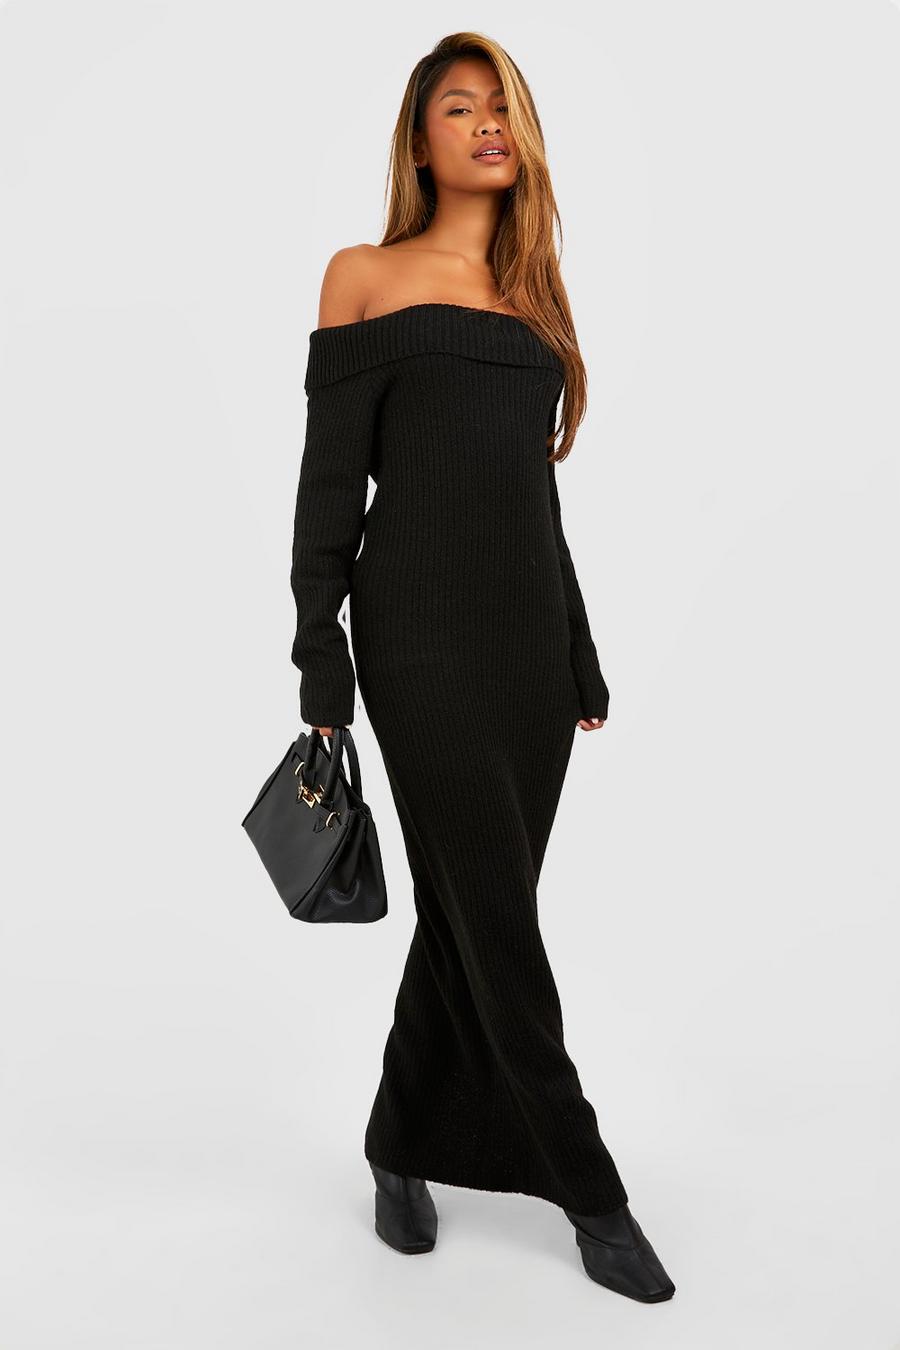 Black Soft Knit Bardot Maxi Jupmer Dress